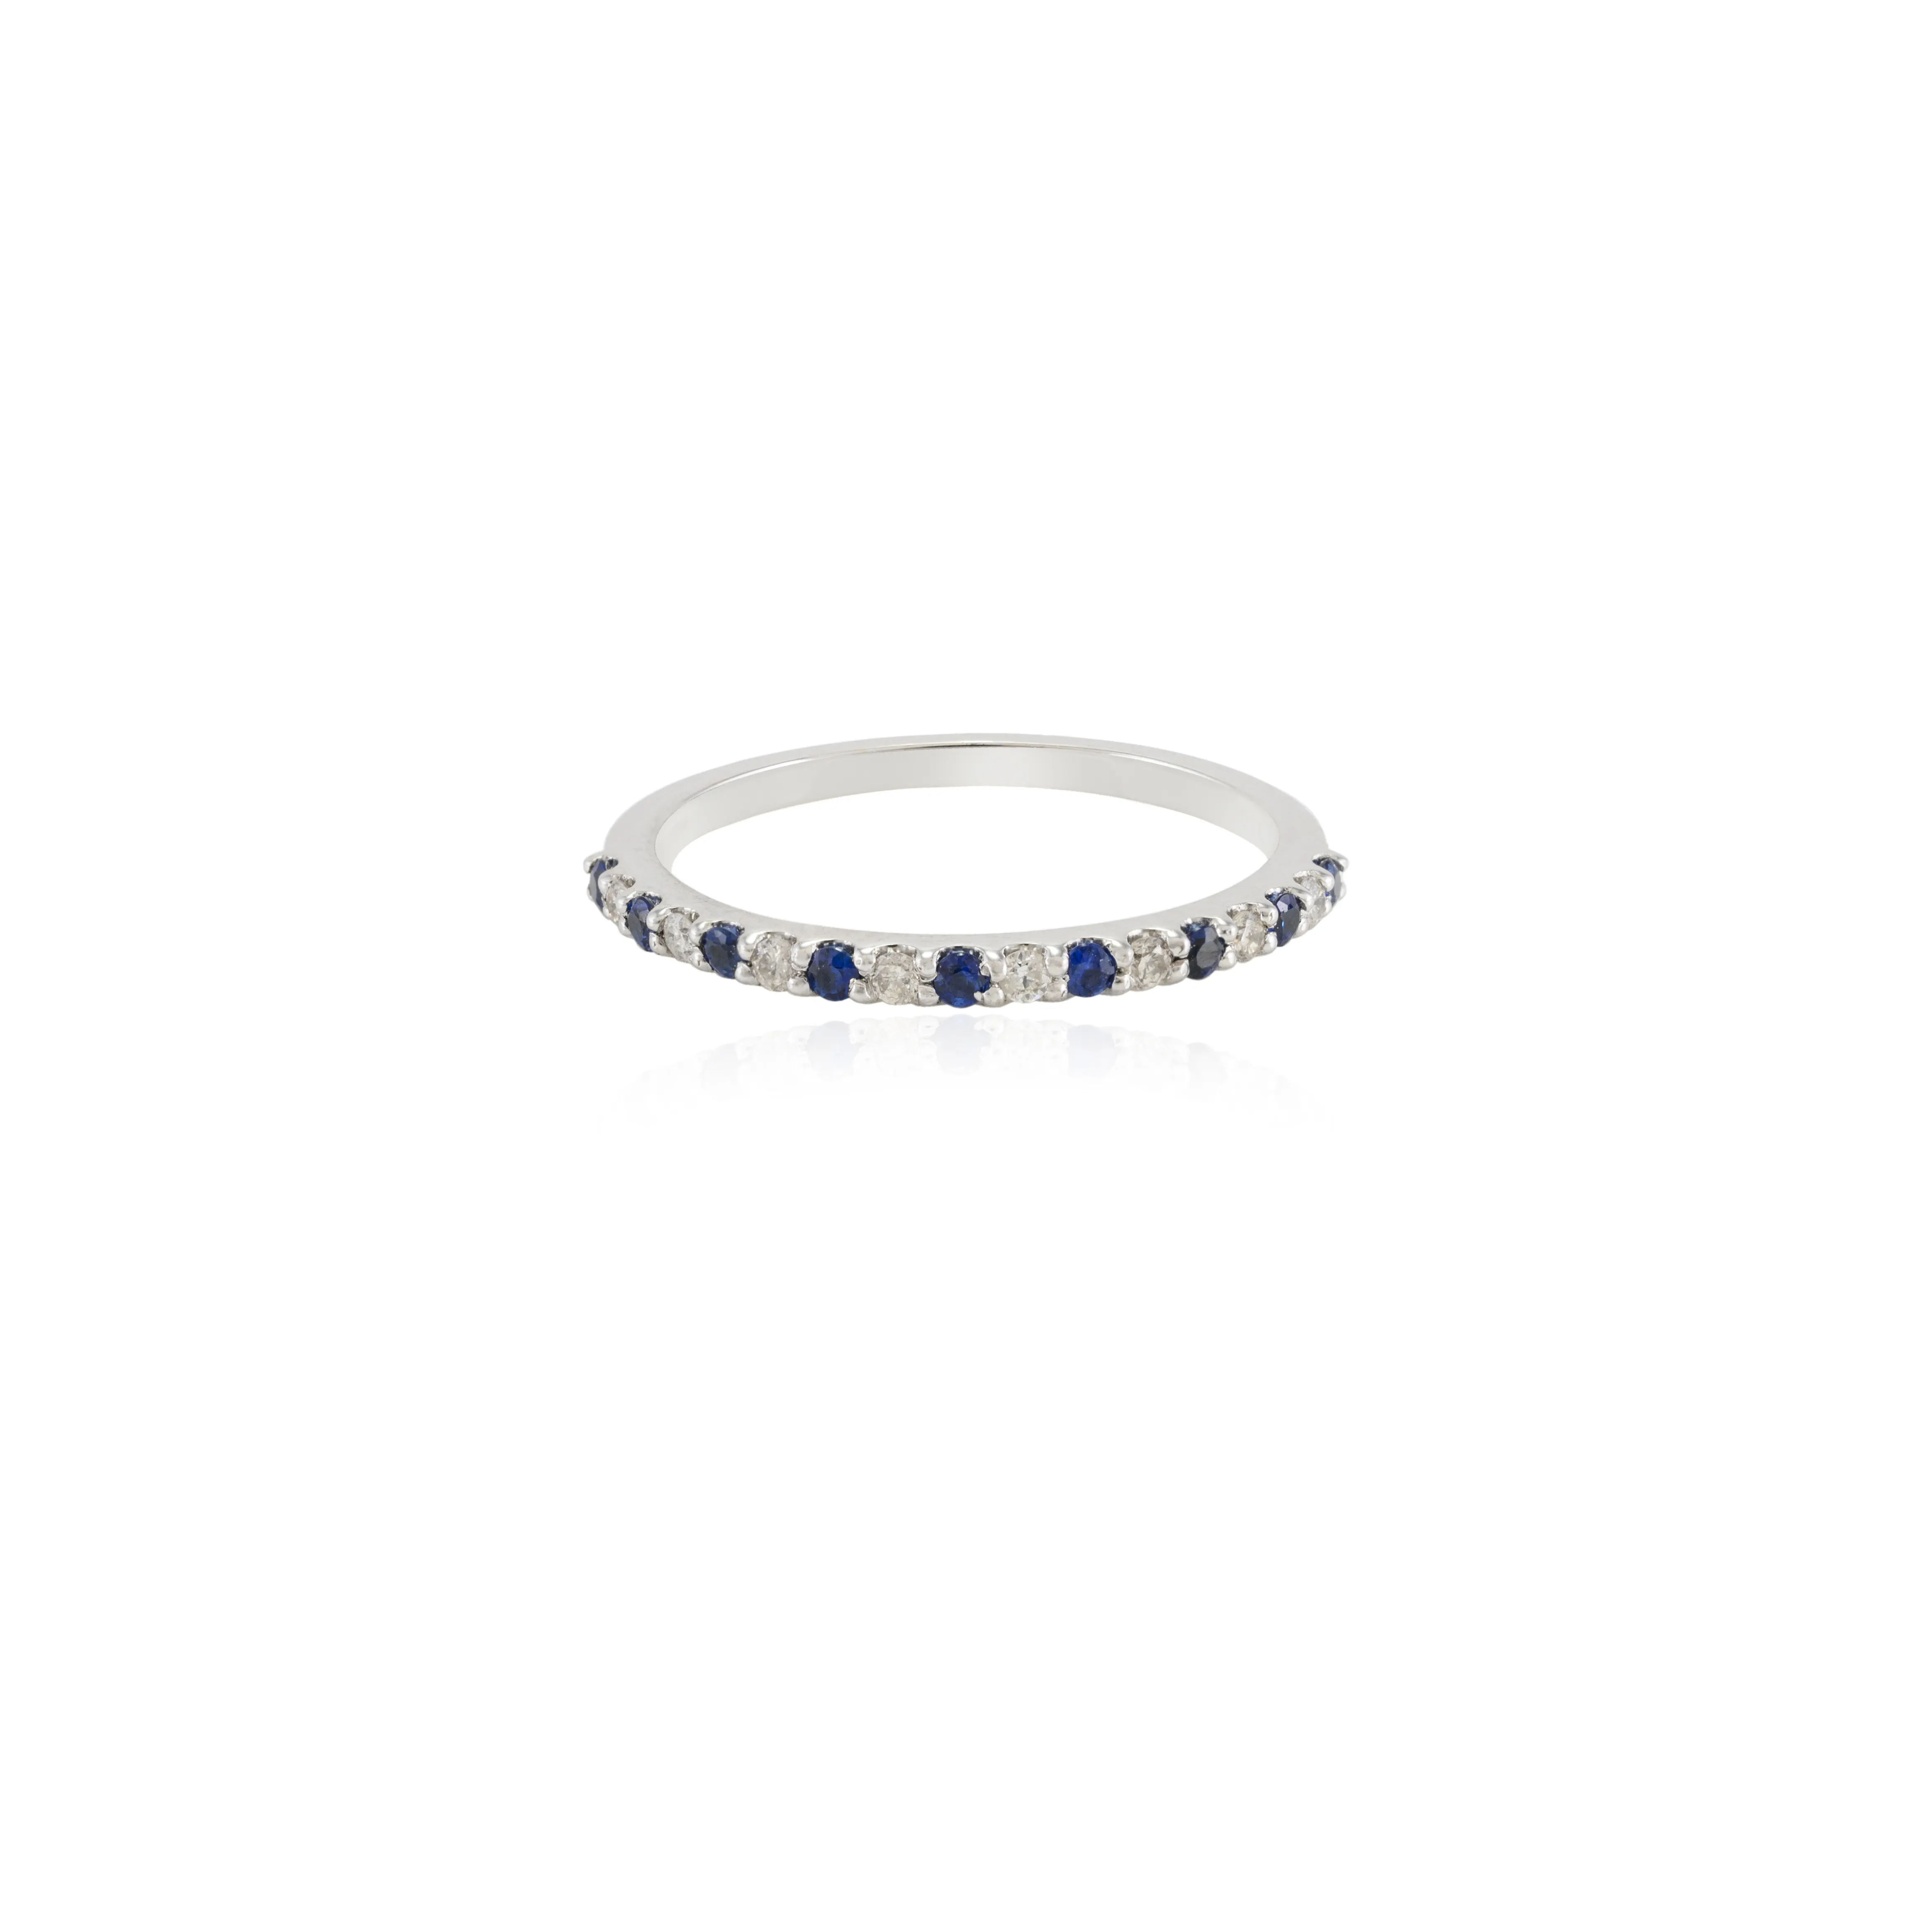 Новый дизайн модные ювелирные изделия 100% натуральный синий сапфир и бриллиант стопка кольцо 18k Сплошное Белое золото ювелирные изделия для женщин и девочек